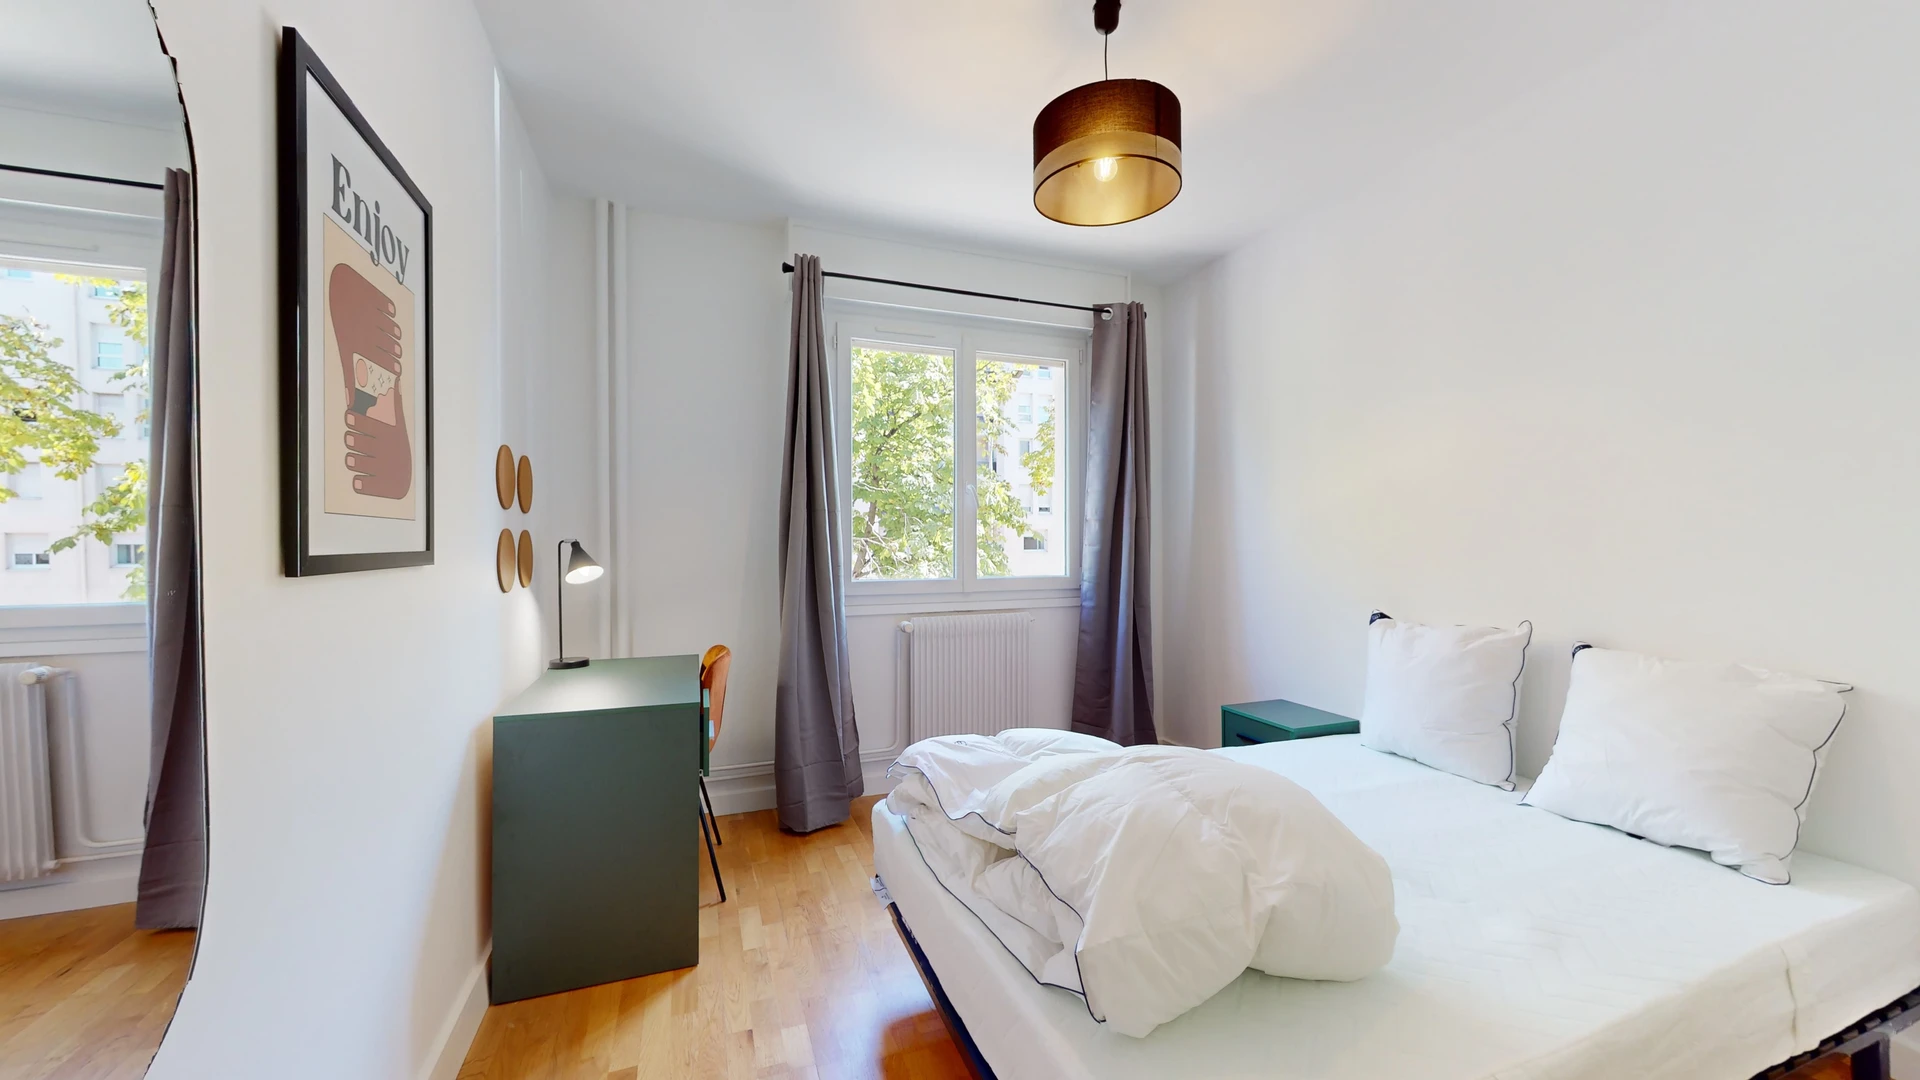 Zimmer mit Doppelbett zu vermieten Villeurbanne